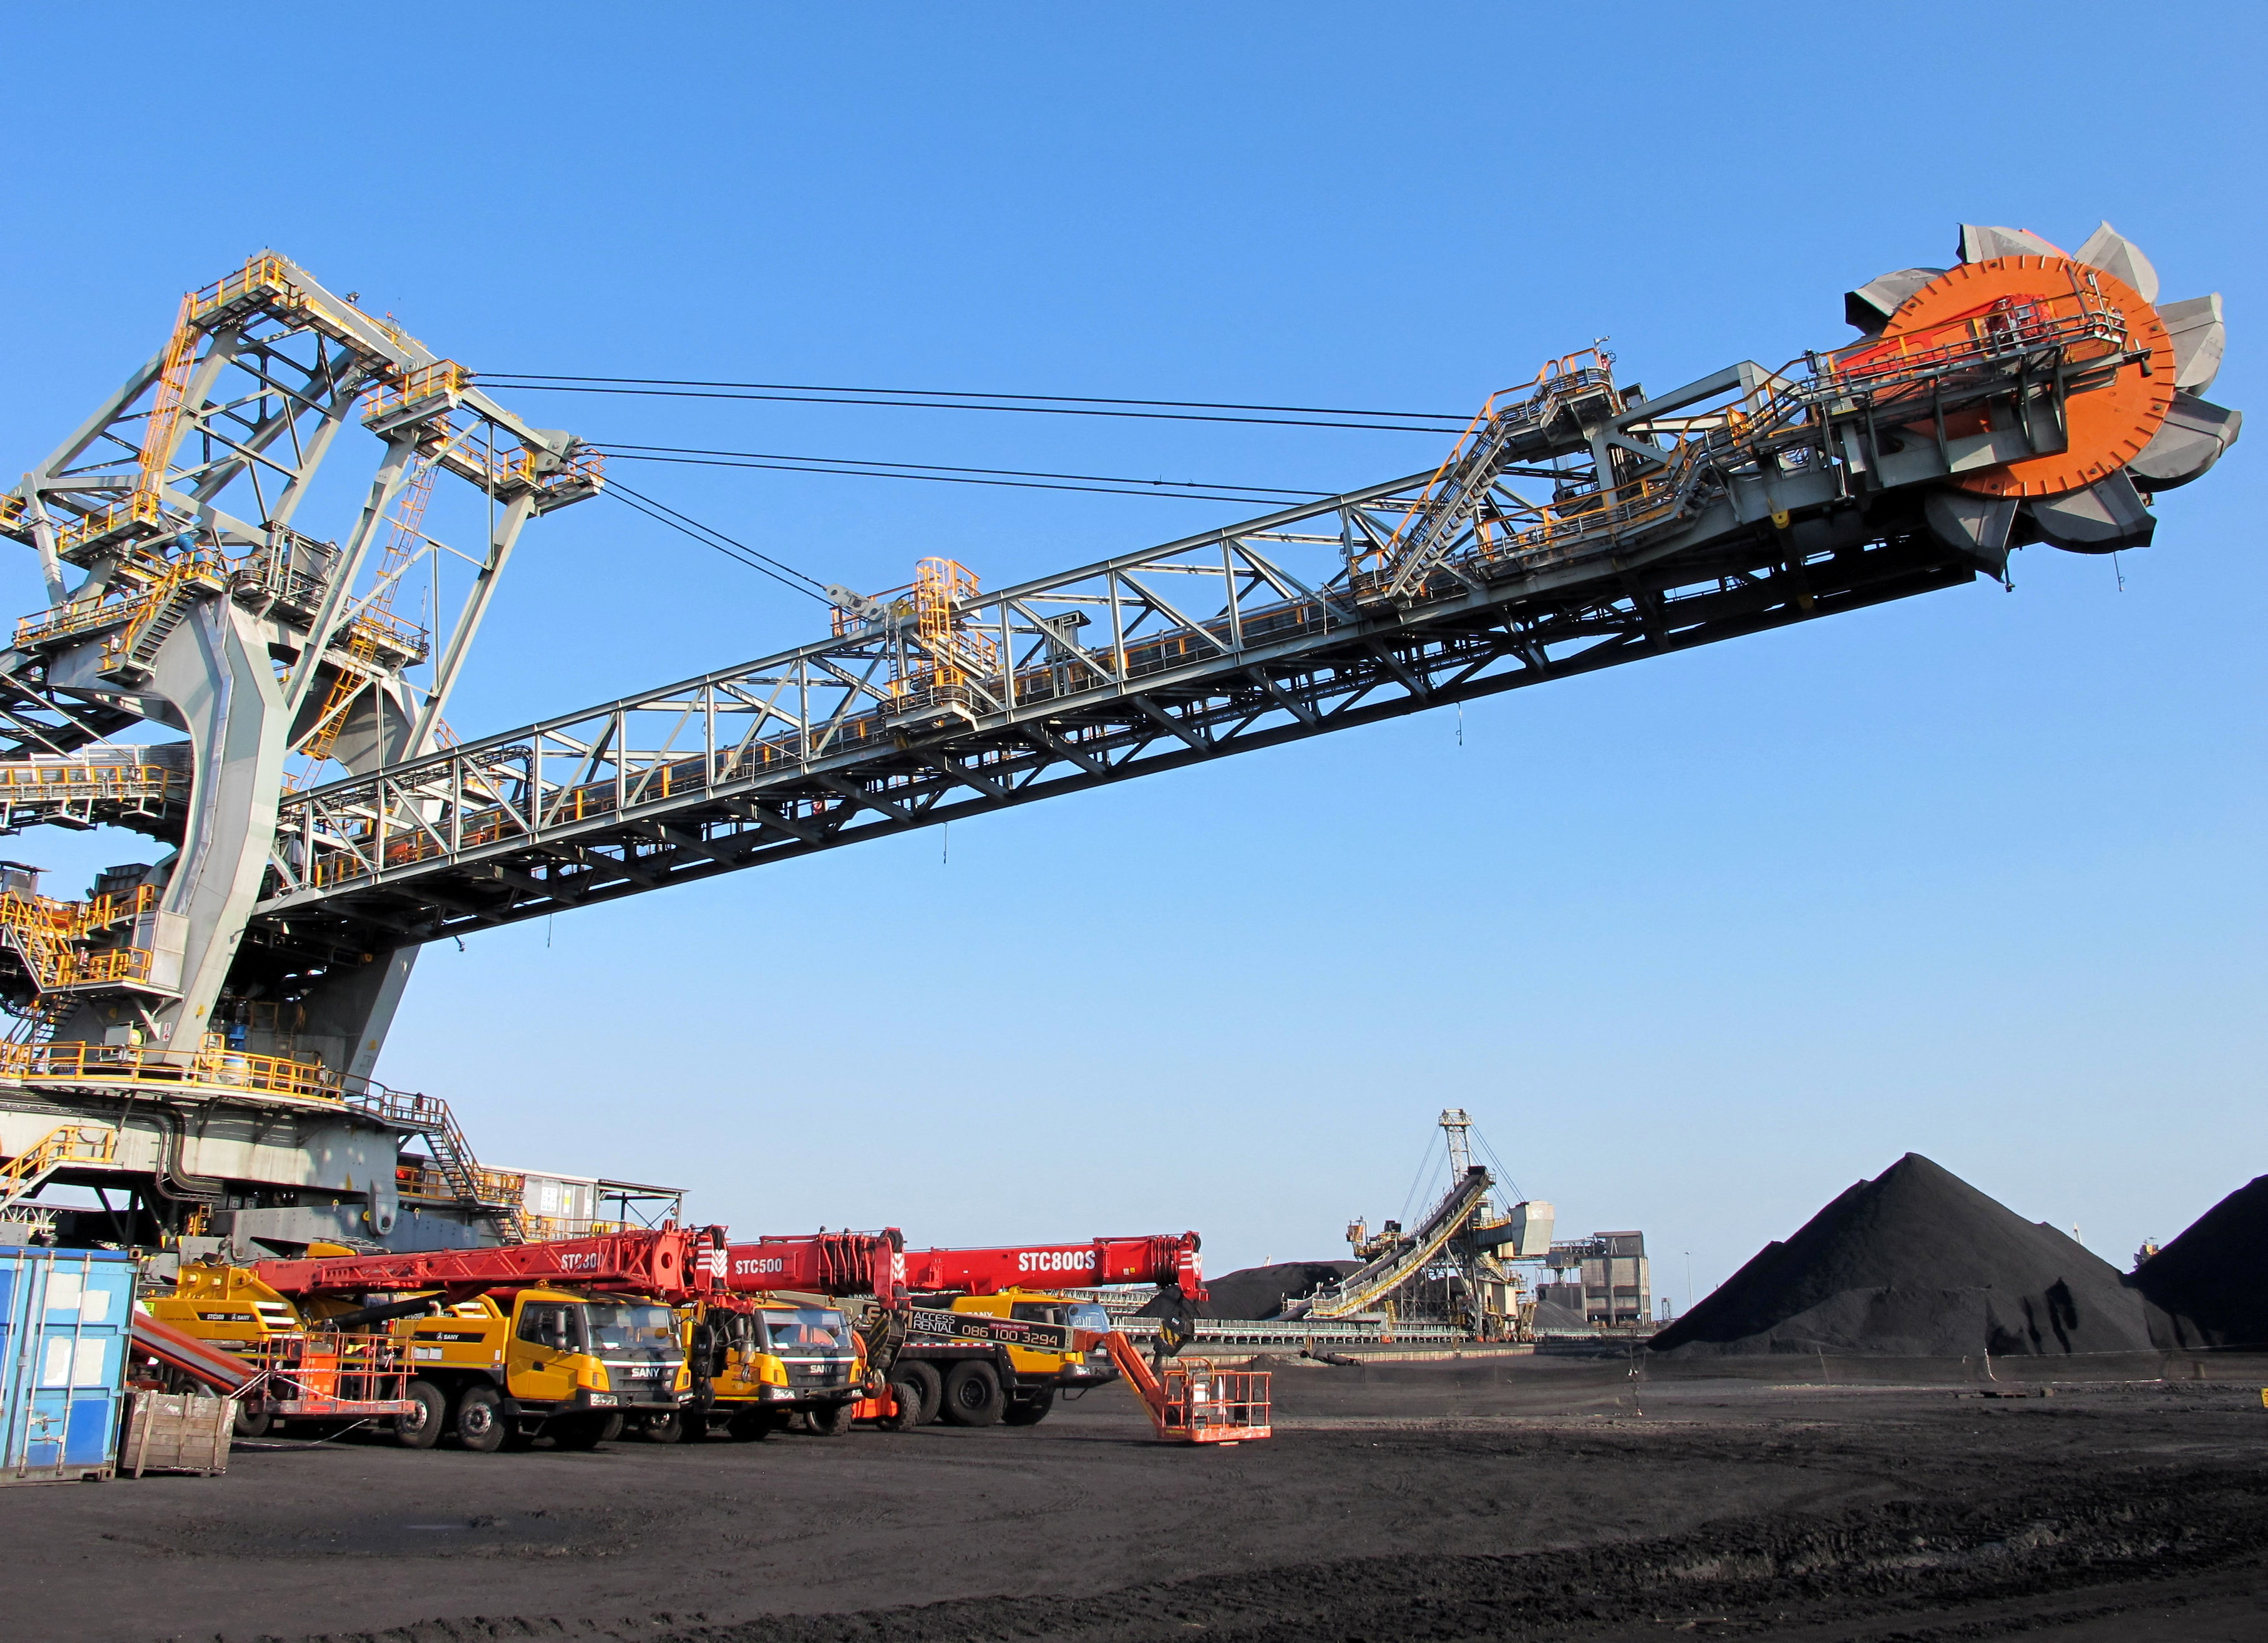 Uno de los dos nuevos recuperadores apiladores montados sobre rieles que recogen y transfieren carbón dentro y fuera del patio se ve en la instalación de exportación de carbón más grande de África, la terminal de carbón de Richards Bay, puerto de Richards Bay.